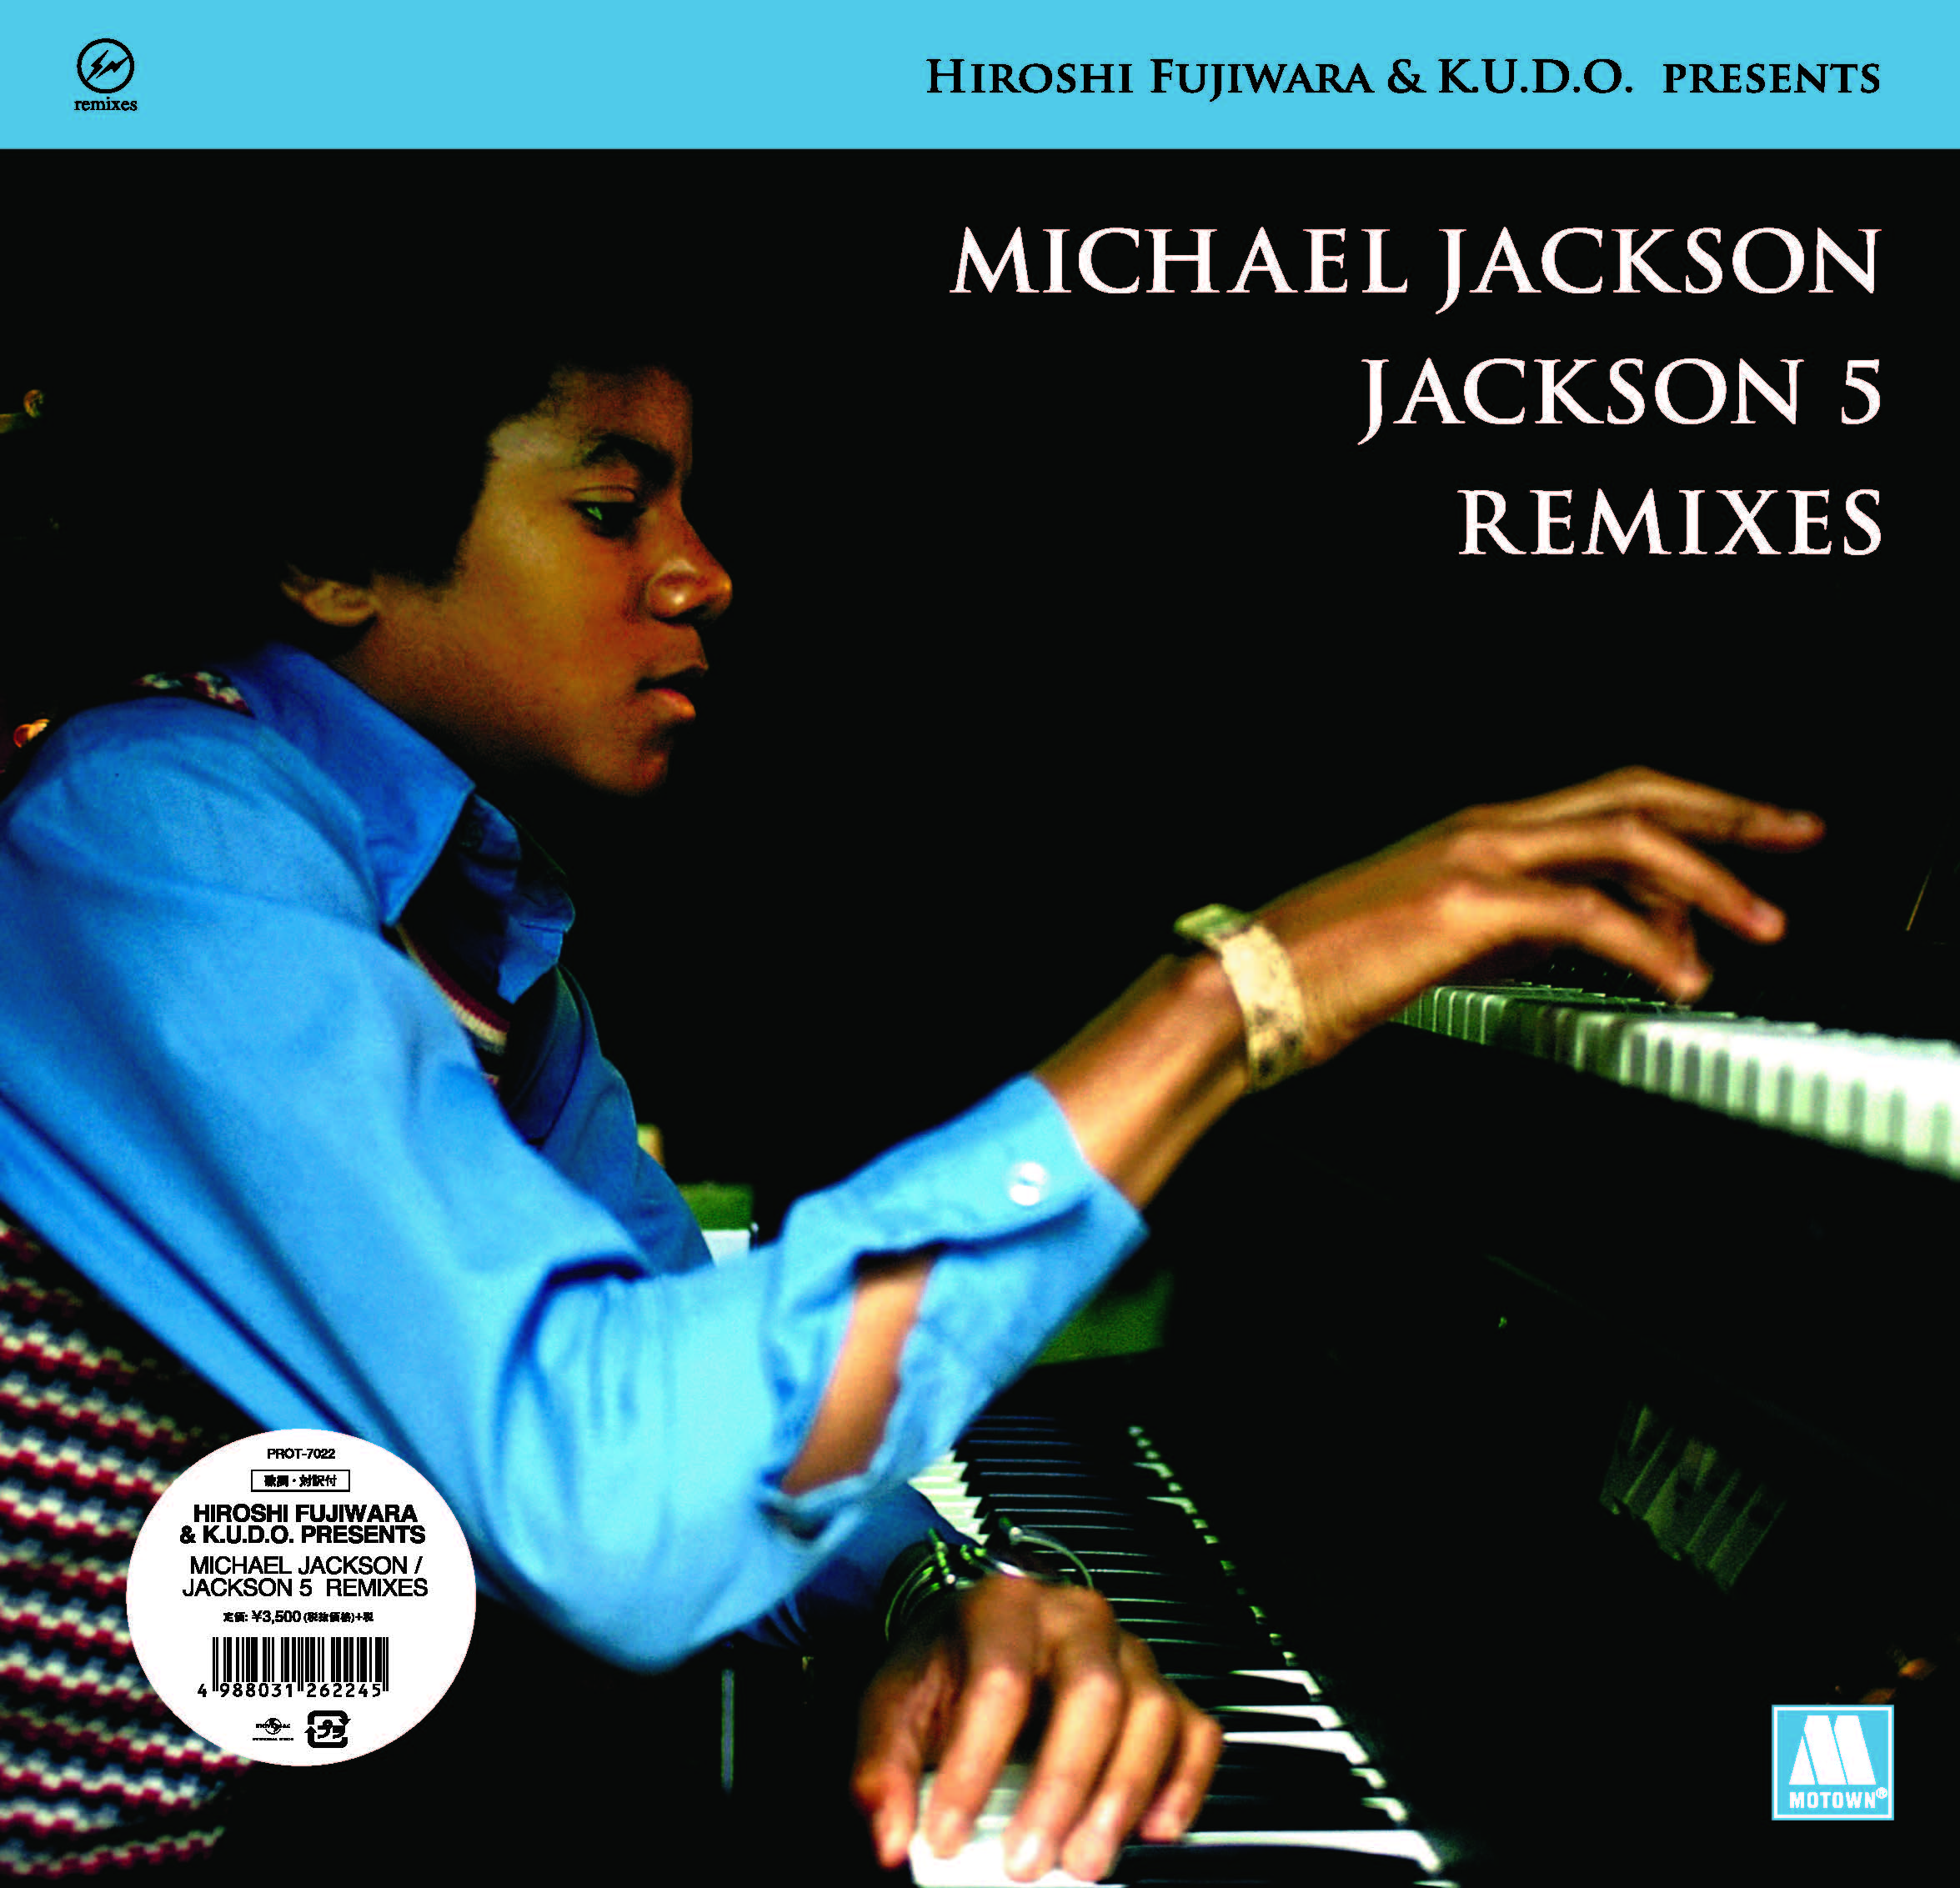 ジャクソン5＆マイケル・ジャクソンREMIX企画盤のダブバージョン発売 